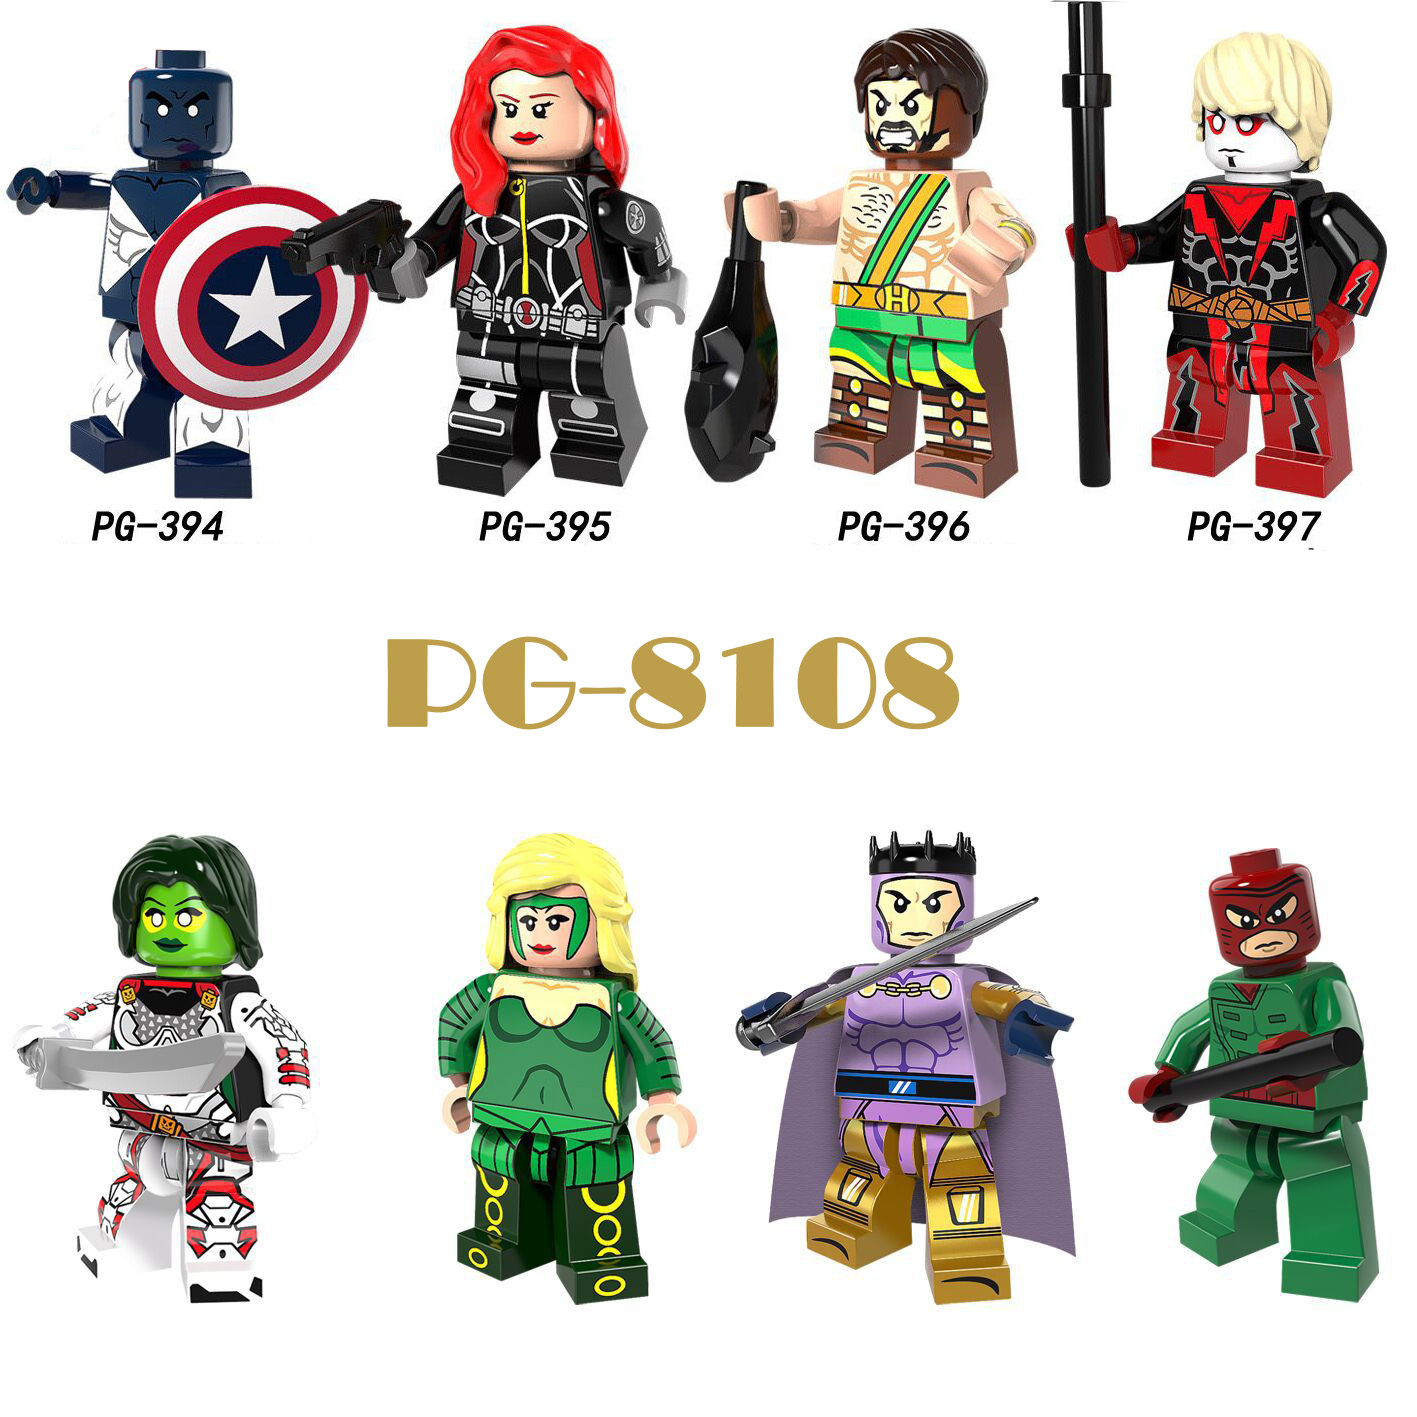 Pogo Superhero Series - PG8108 Vance Astro Minifigures